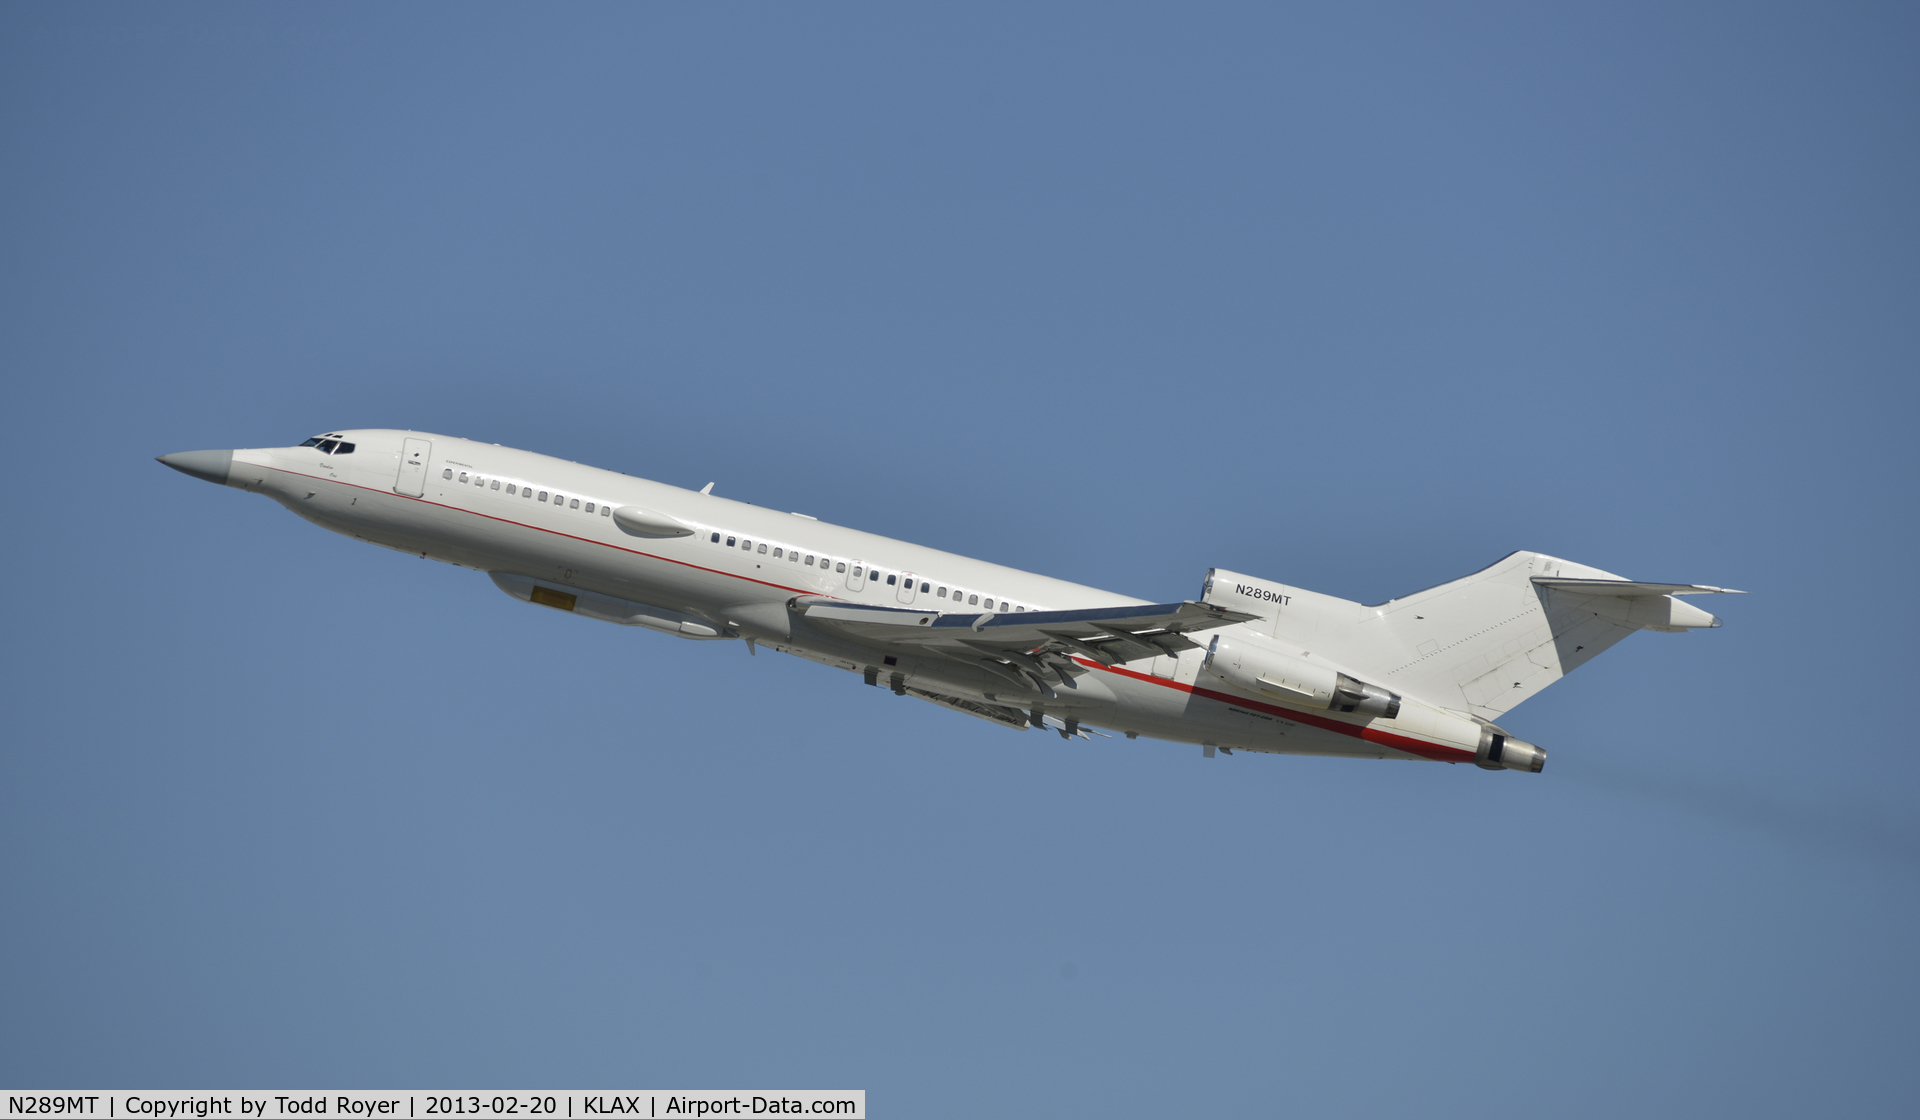 N289MT, 1981 Boeing 727-223 C/N 22467, Departing LAX